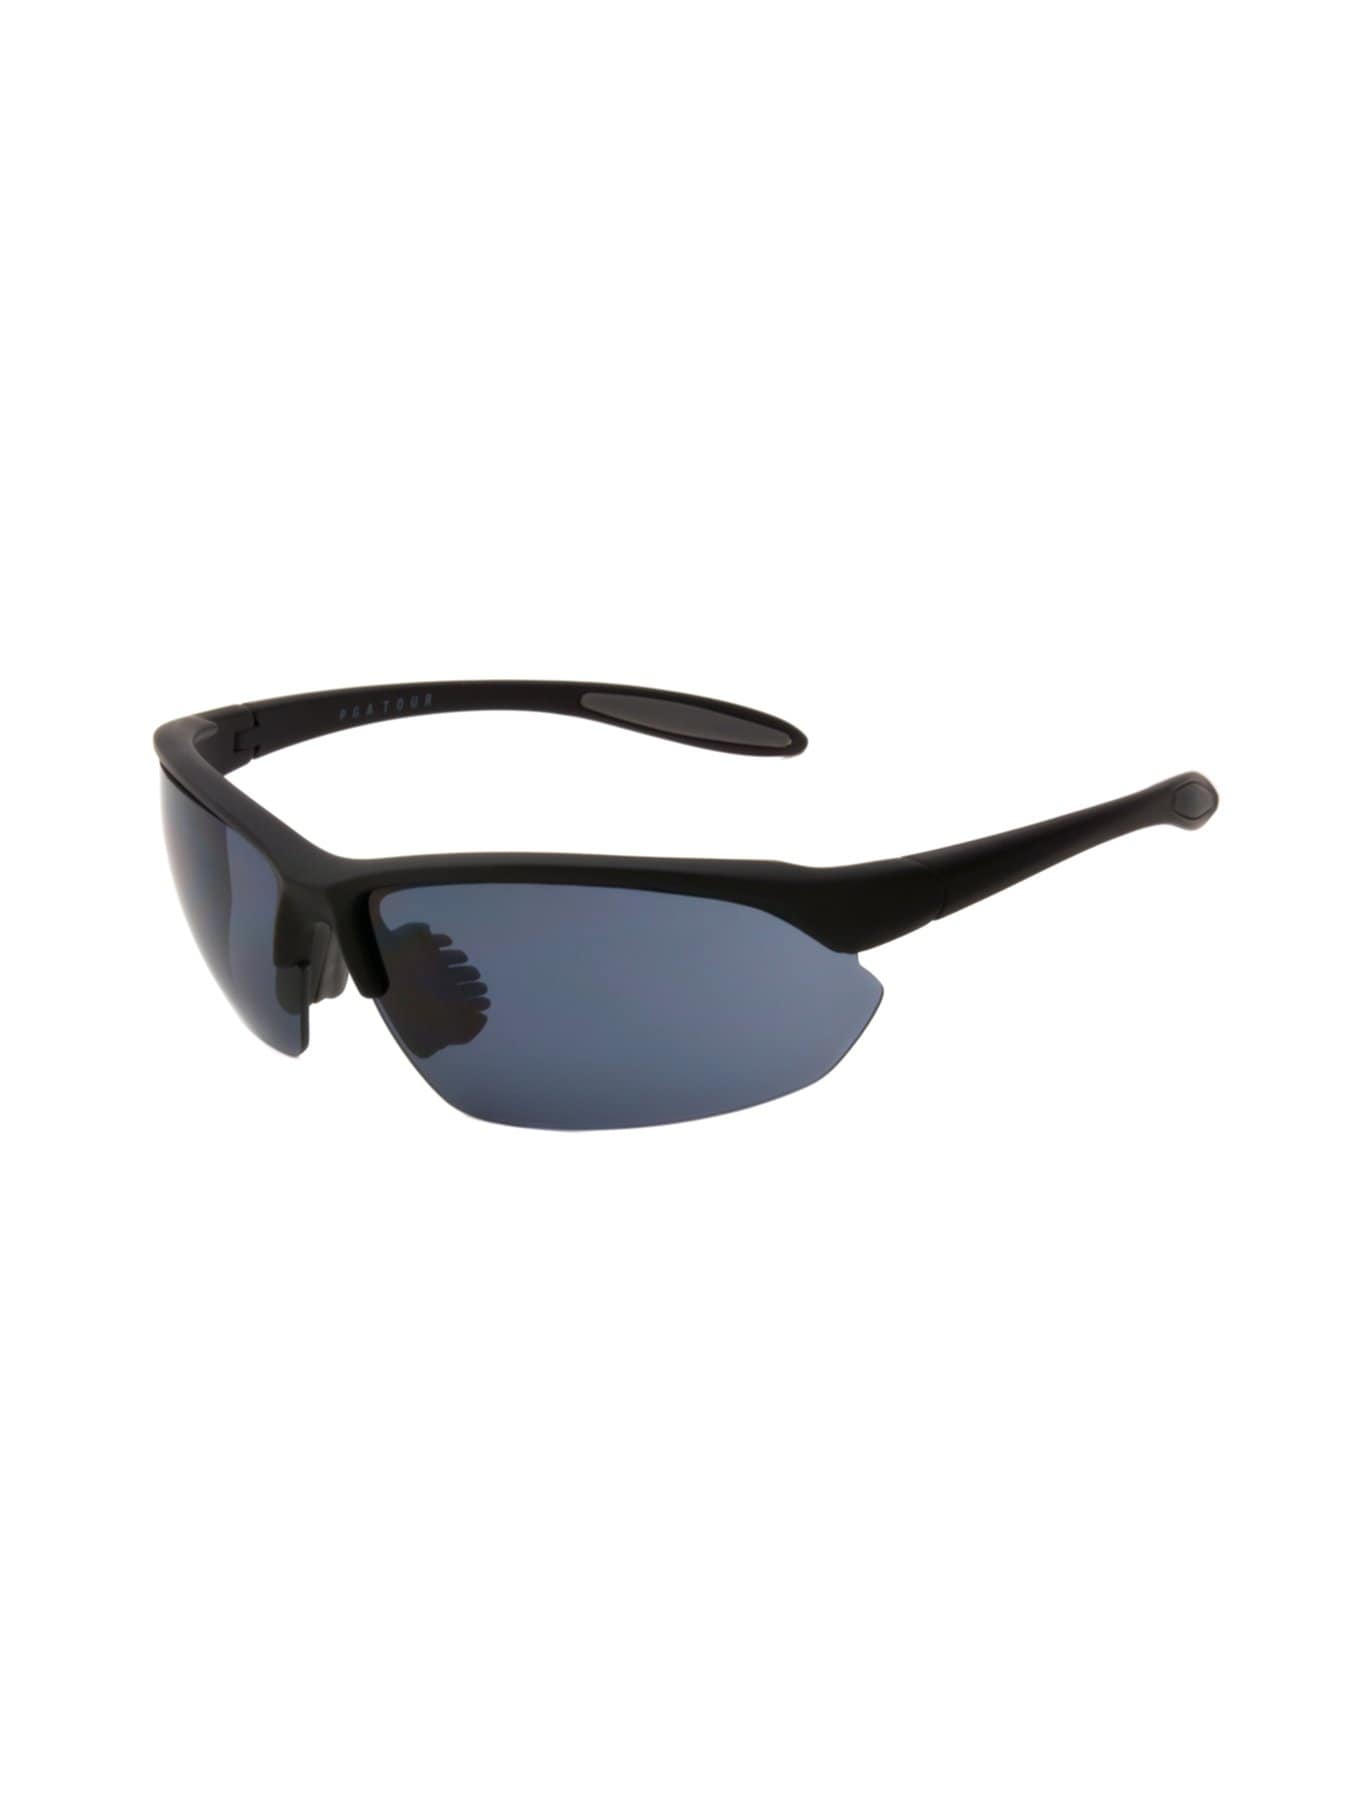 PGA TOUR Apparel Mens Wrap Blade Sunglasses, Black | Golf Apparel Shop